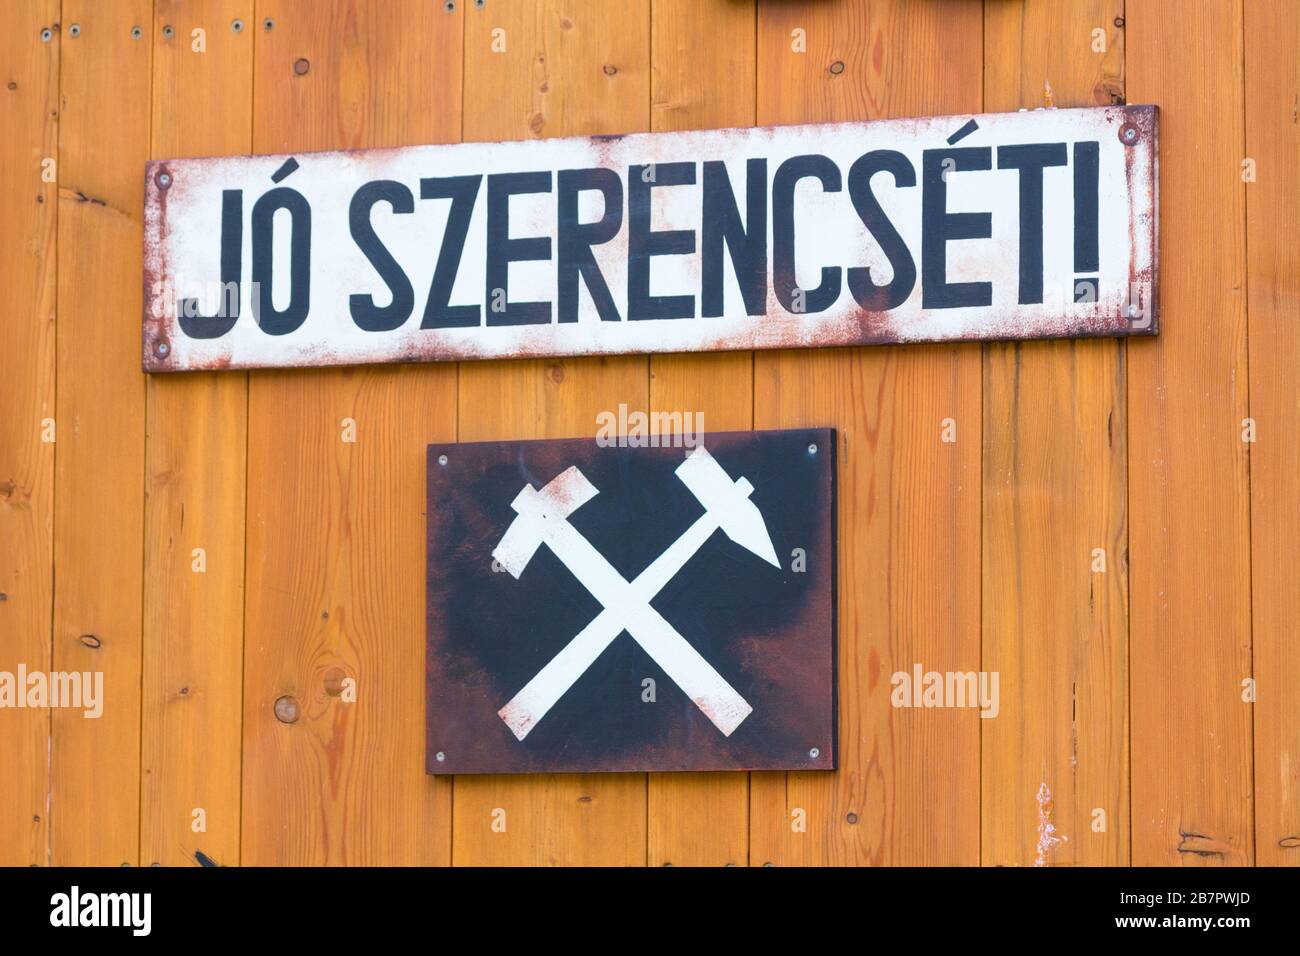 Jo szerencset (buena suerte) pie de foto con los mineros firman emblema en el juguete de madera en el parque infantil, Brennbergbanya, Sopron, Hungría Foto de stock